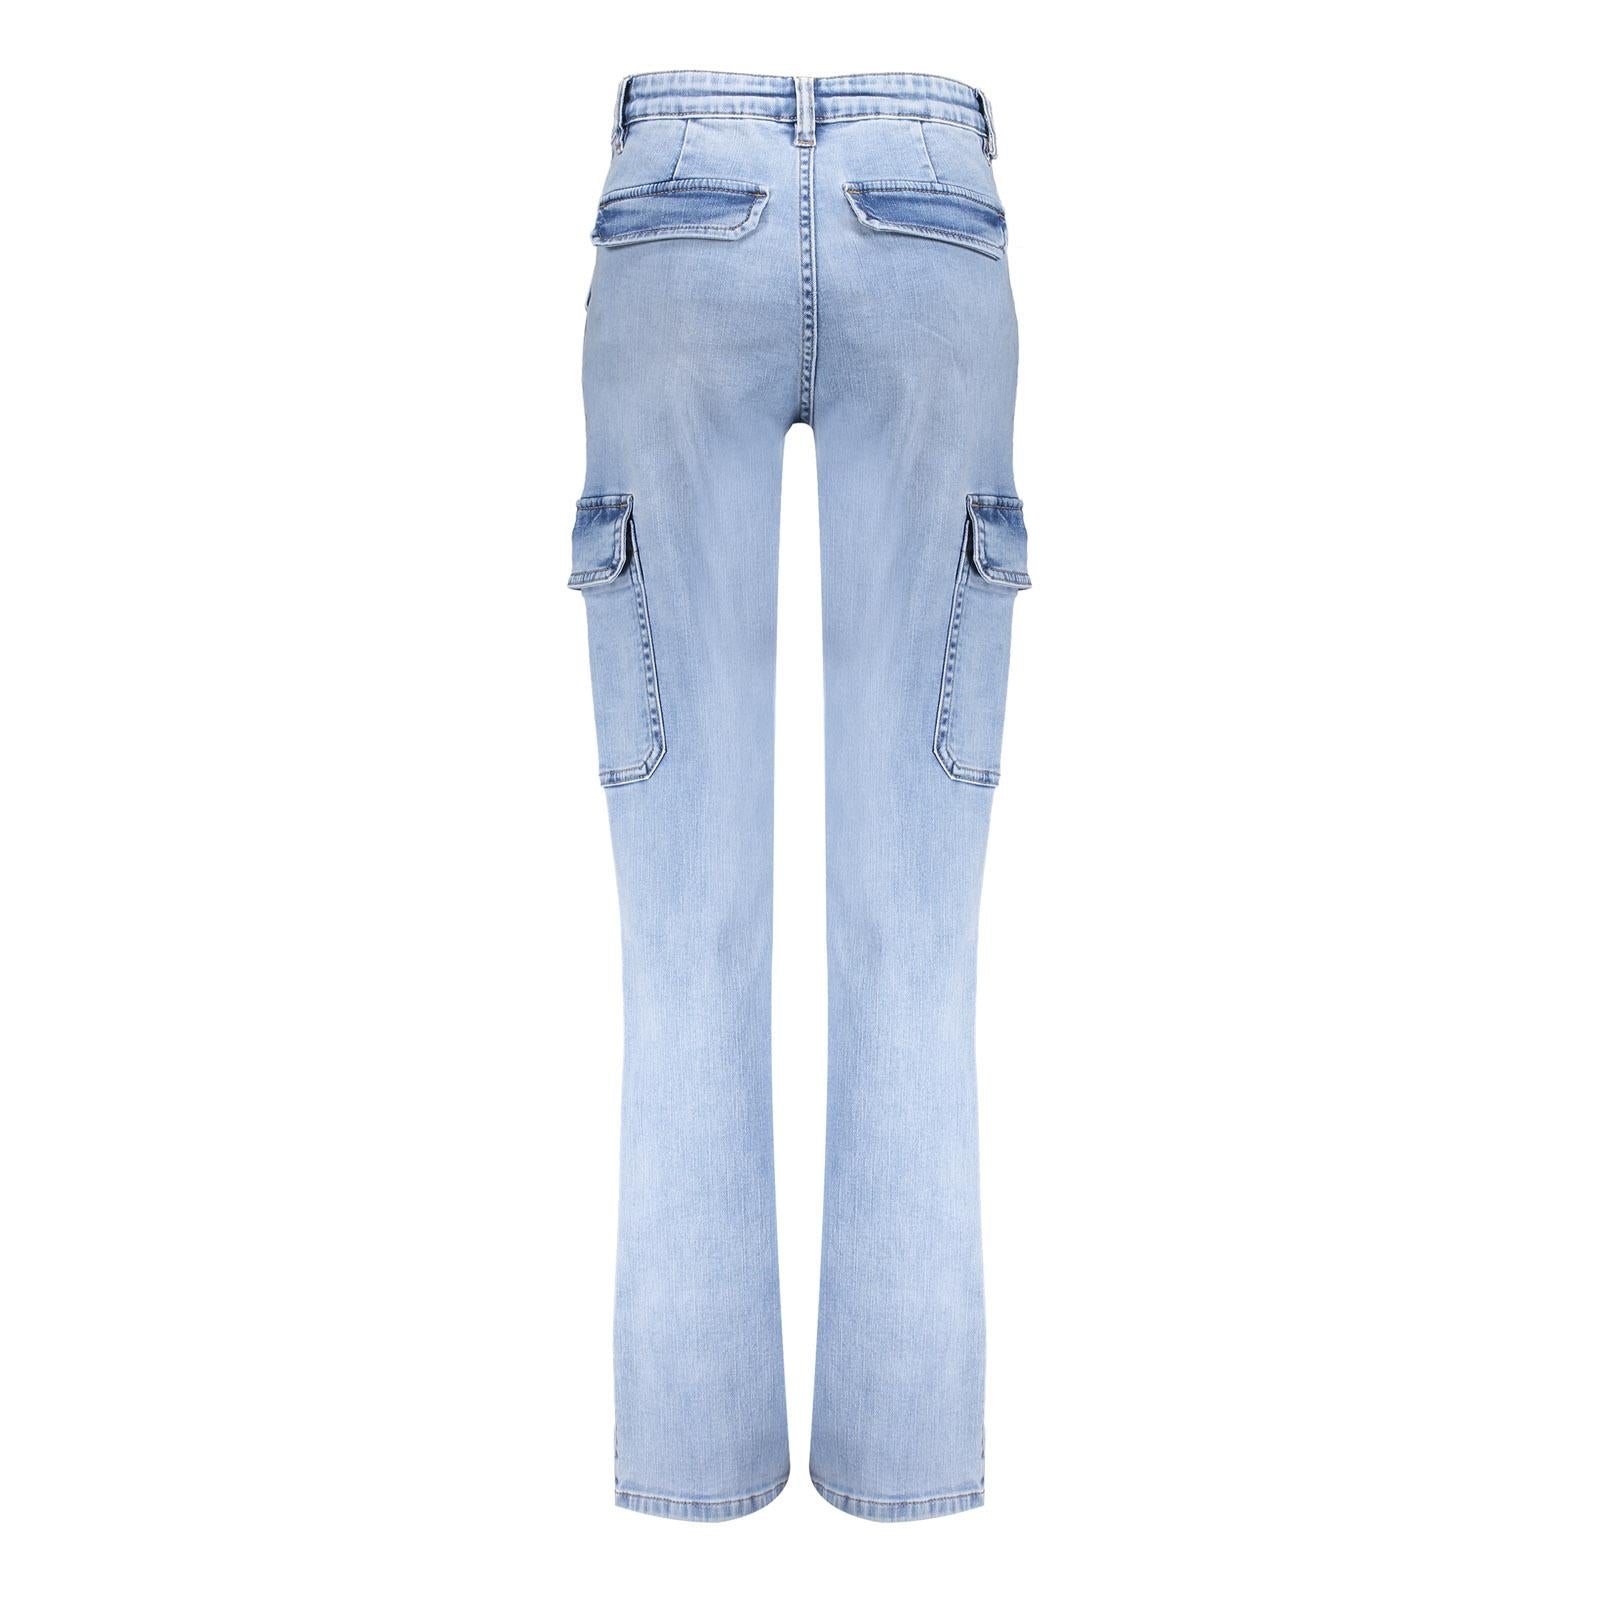 Meisjes Cargo jeans  van Geisha in de kleur stonebleach denim in maat 176.